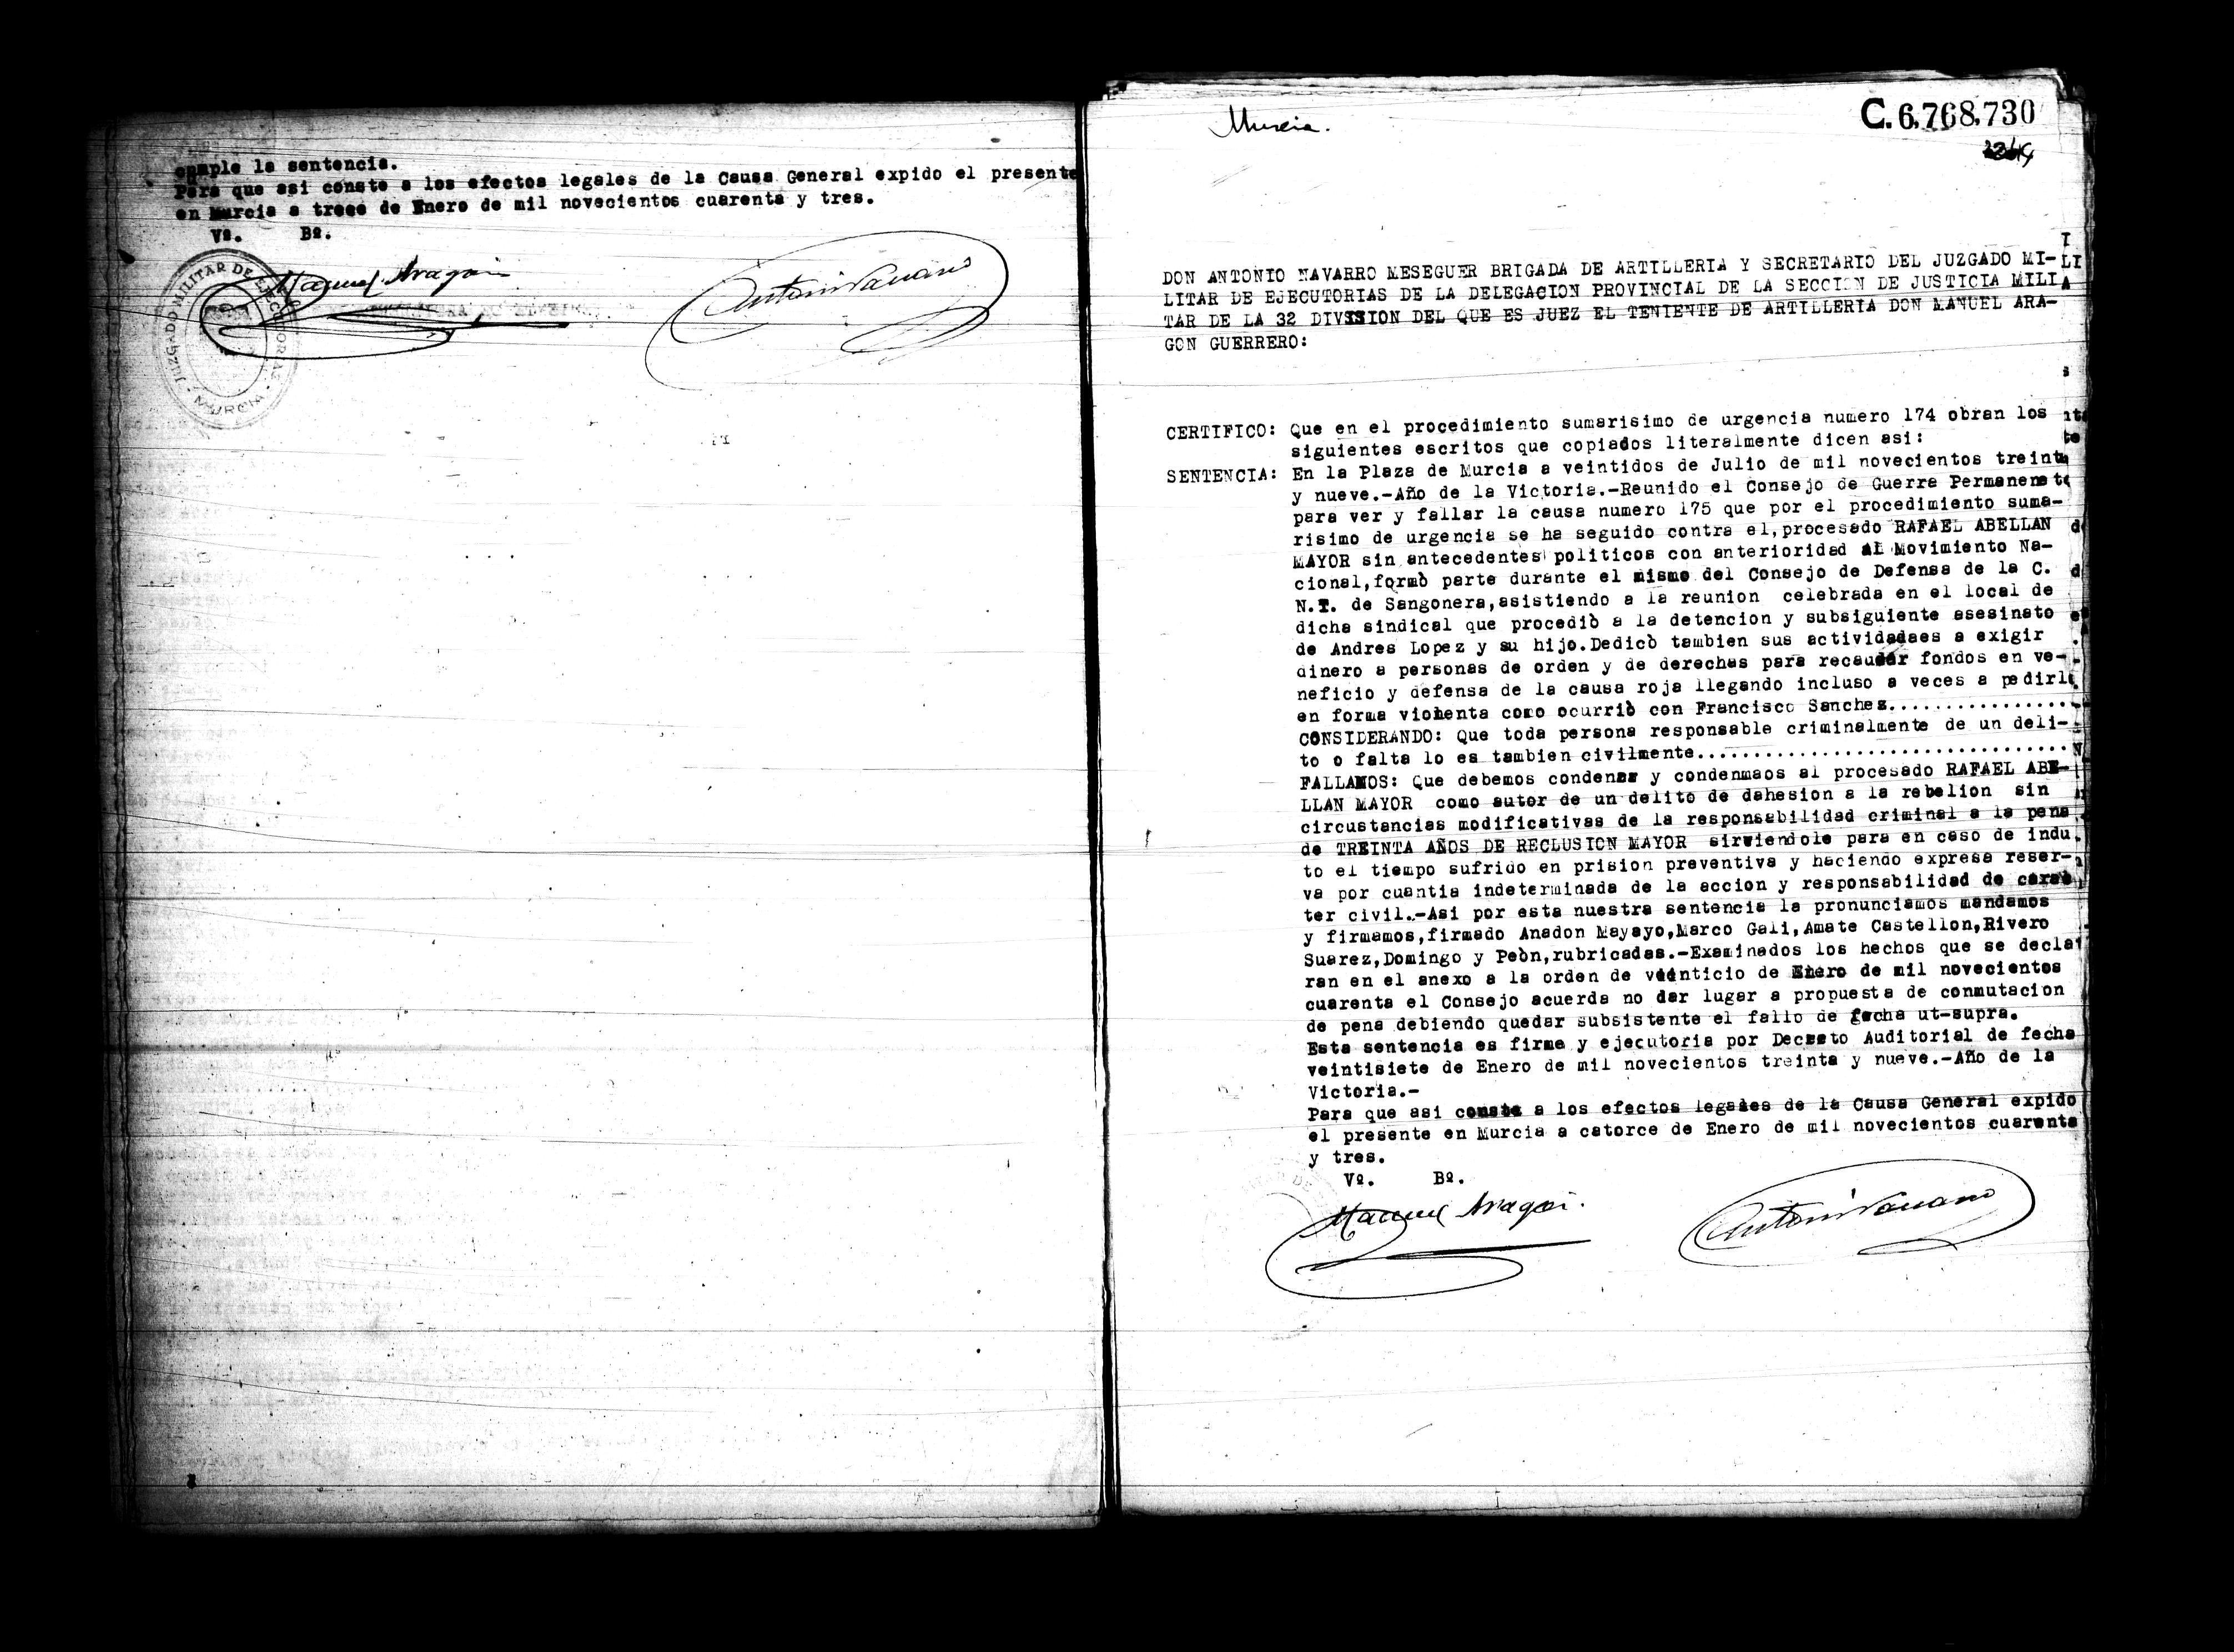 Certificado de la sentencia pronunciada contra Rafael Abellán Mayor, causa 175, el 22 de julio de 1939 en Murcia.